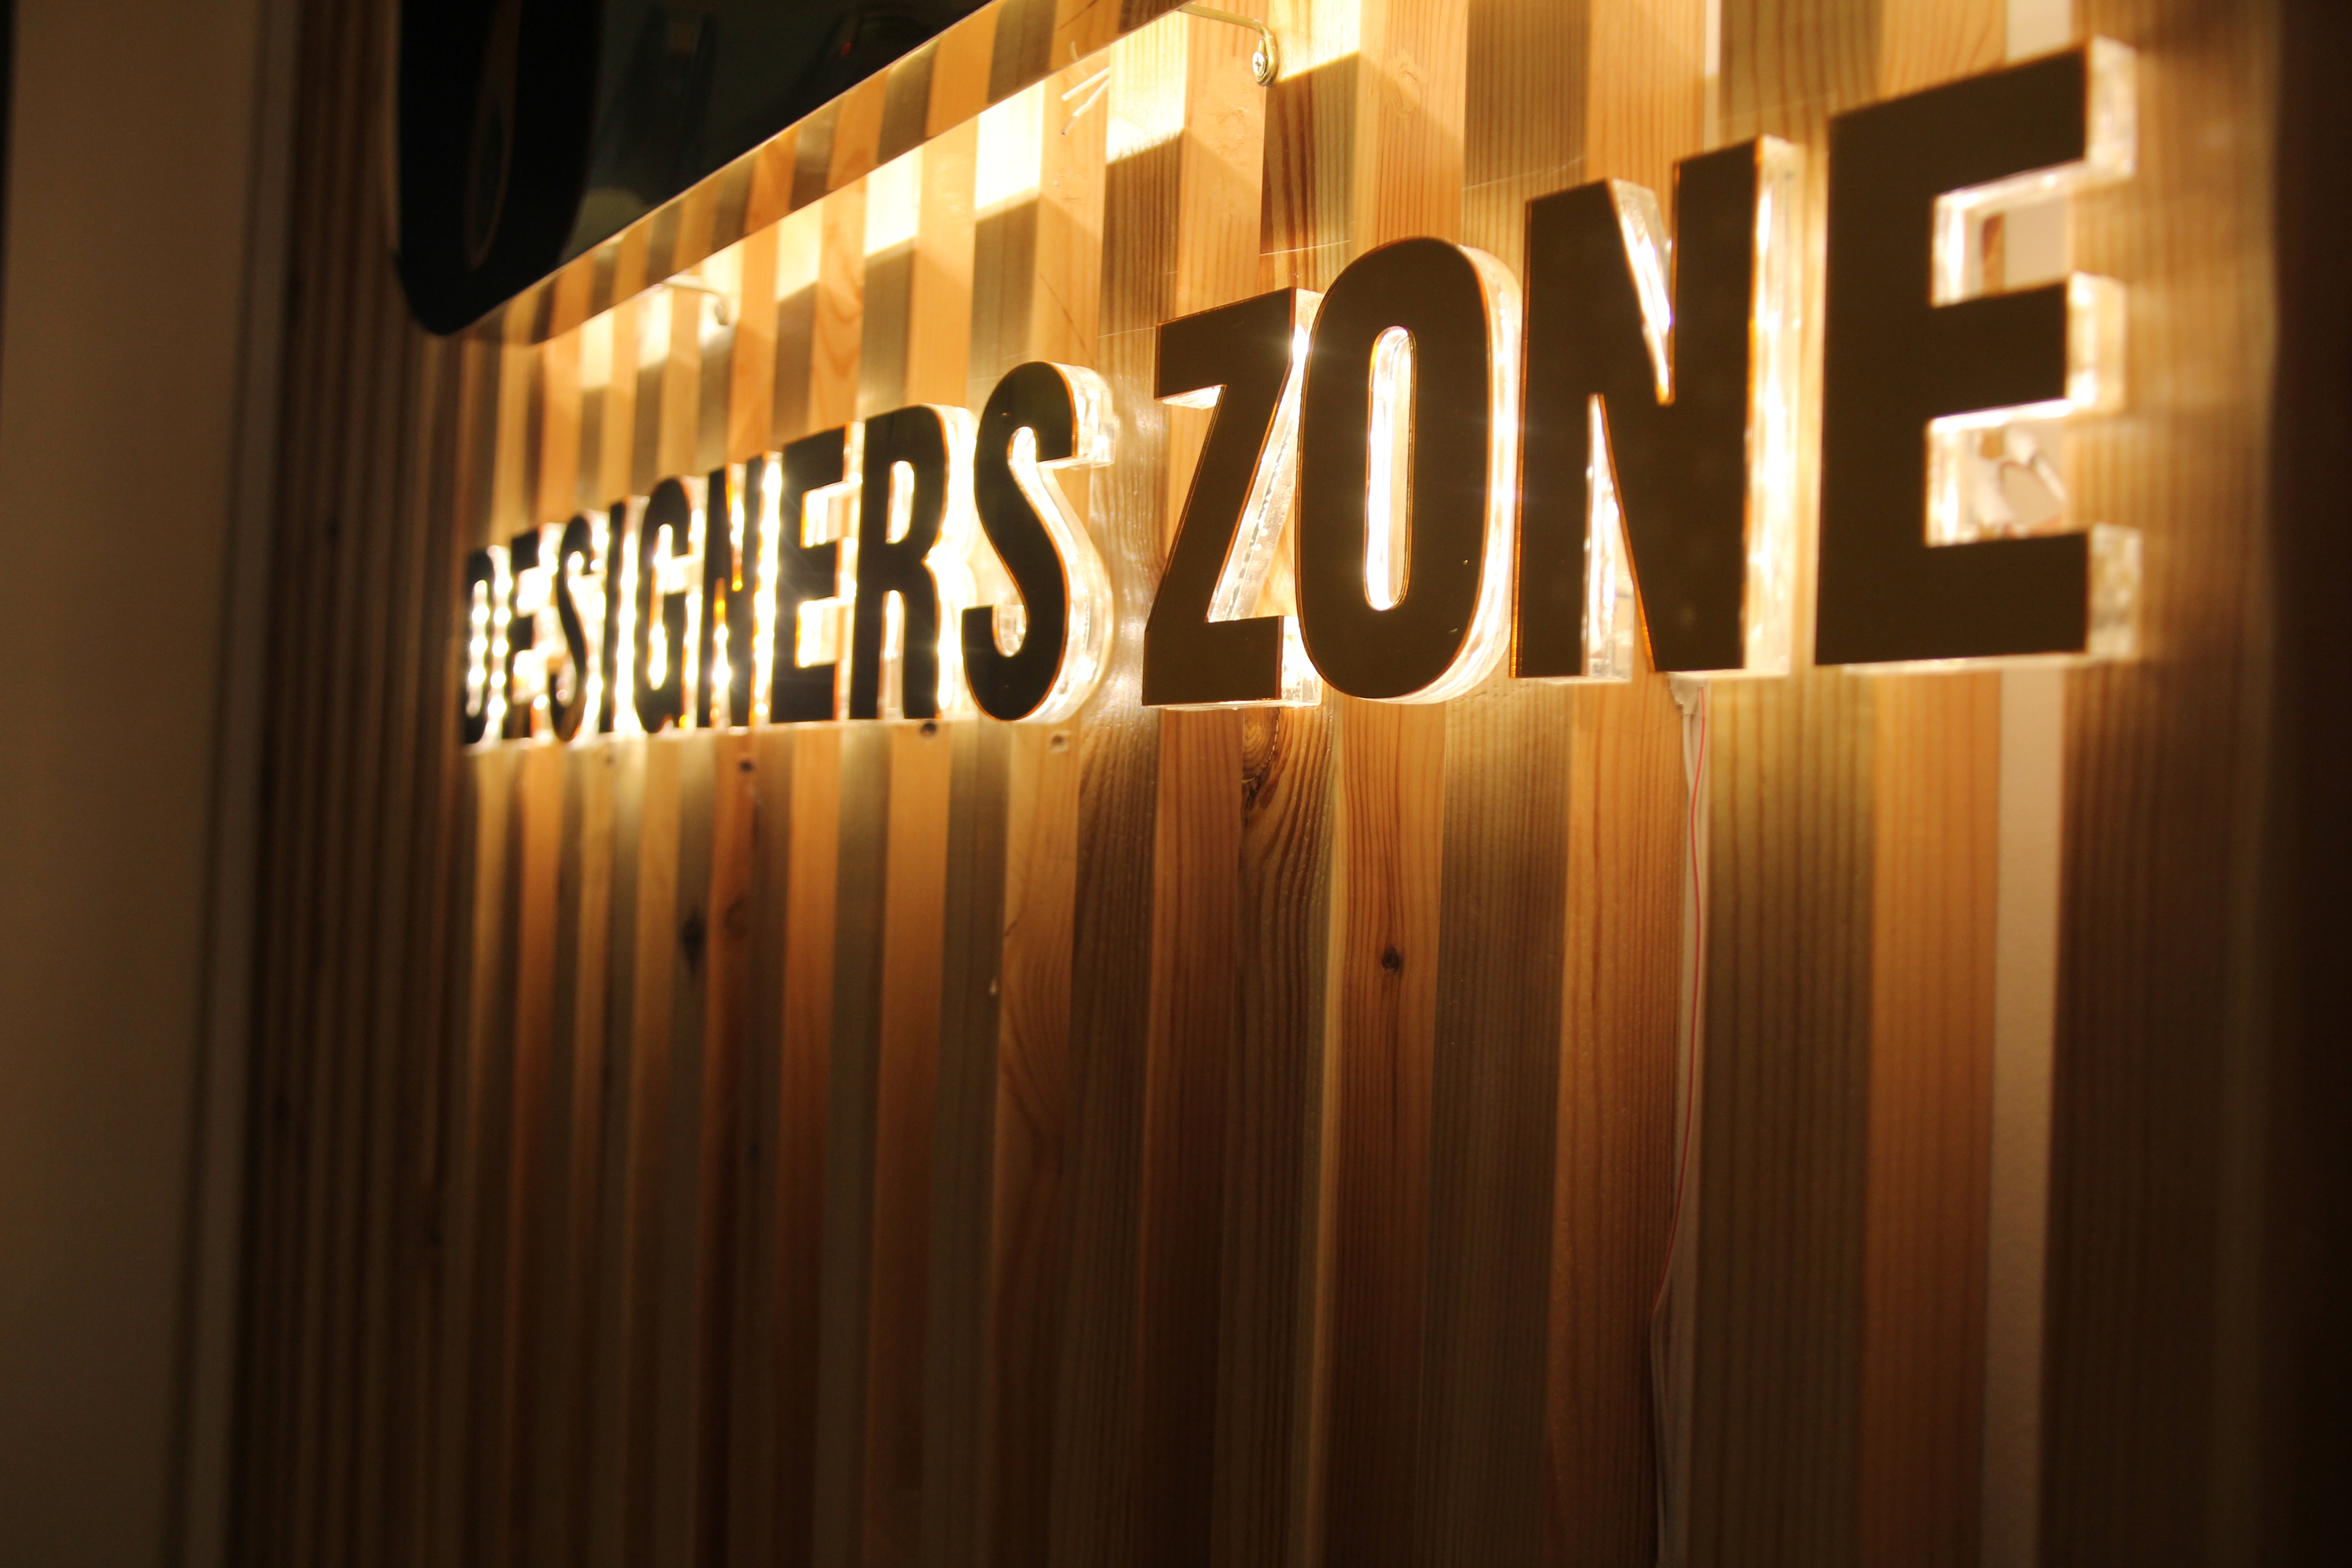    Designers Zone